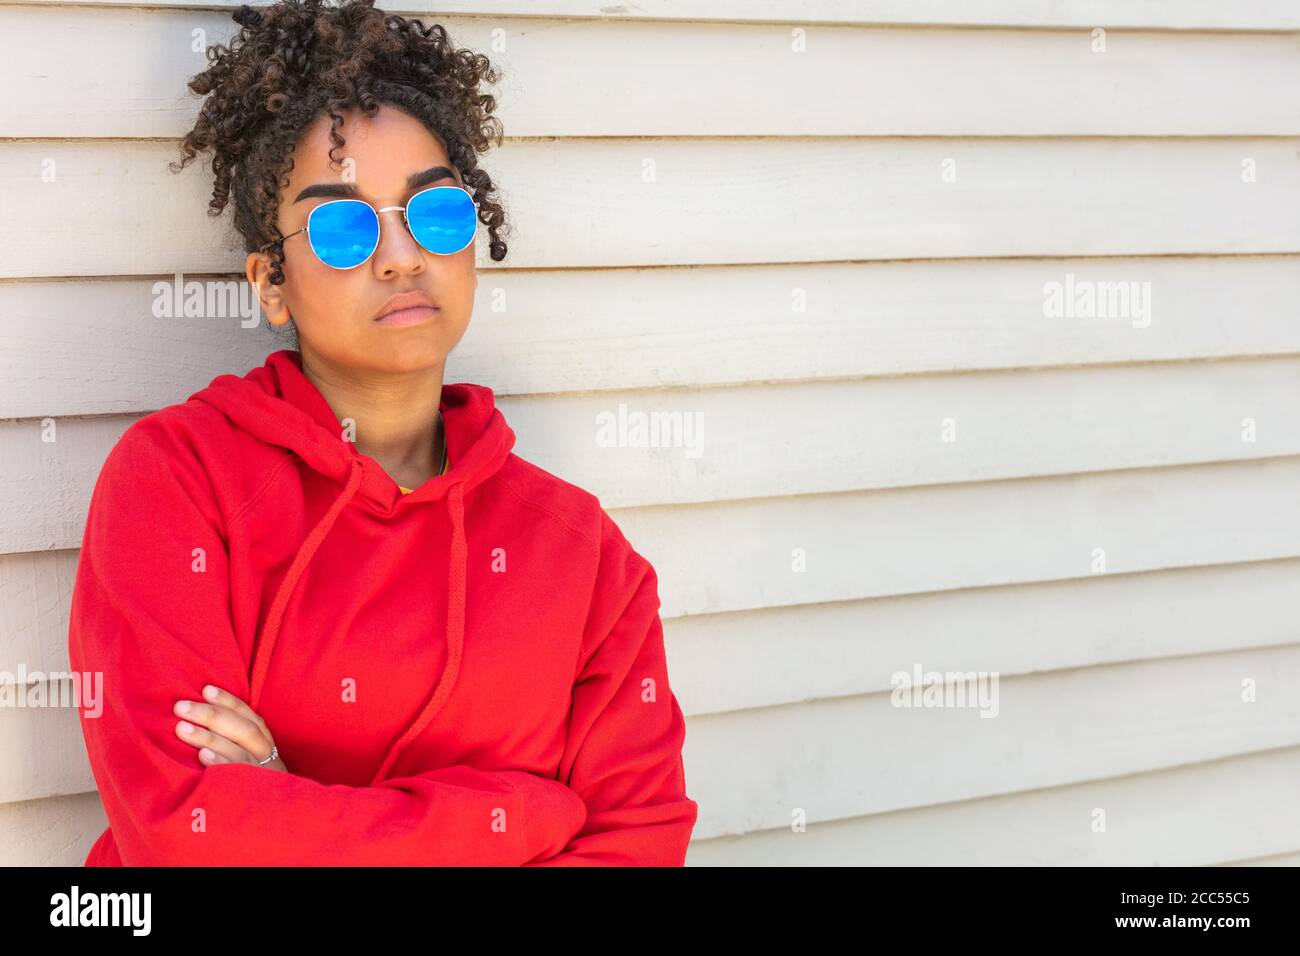 Ragazza adolescente cool teen misto razza biracial African American femmina giovane donna che indossa occhiali da sole blu e una felpa con cappuccio rossa vacanza al sole d'estate Foto Stock